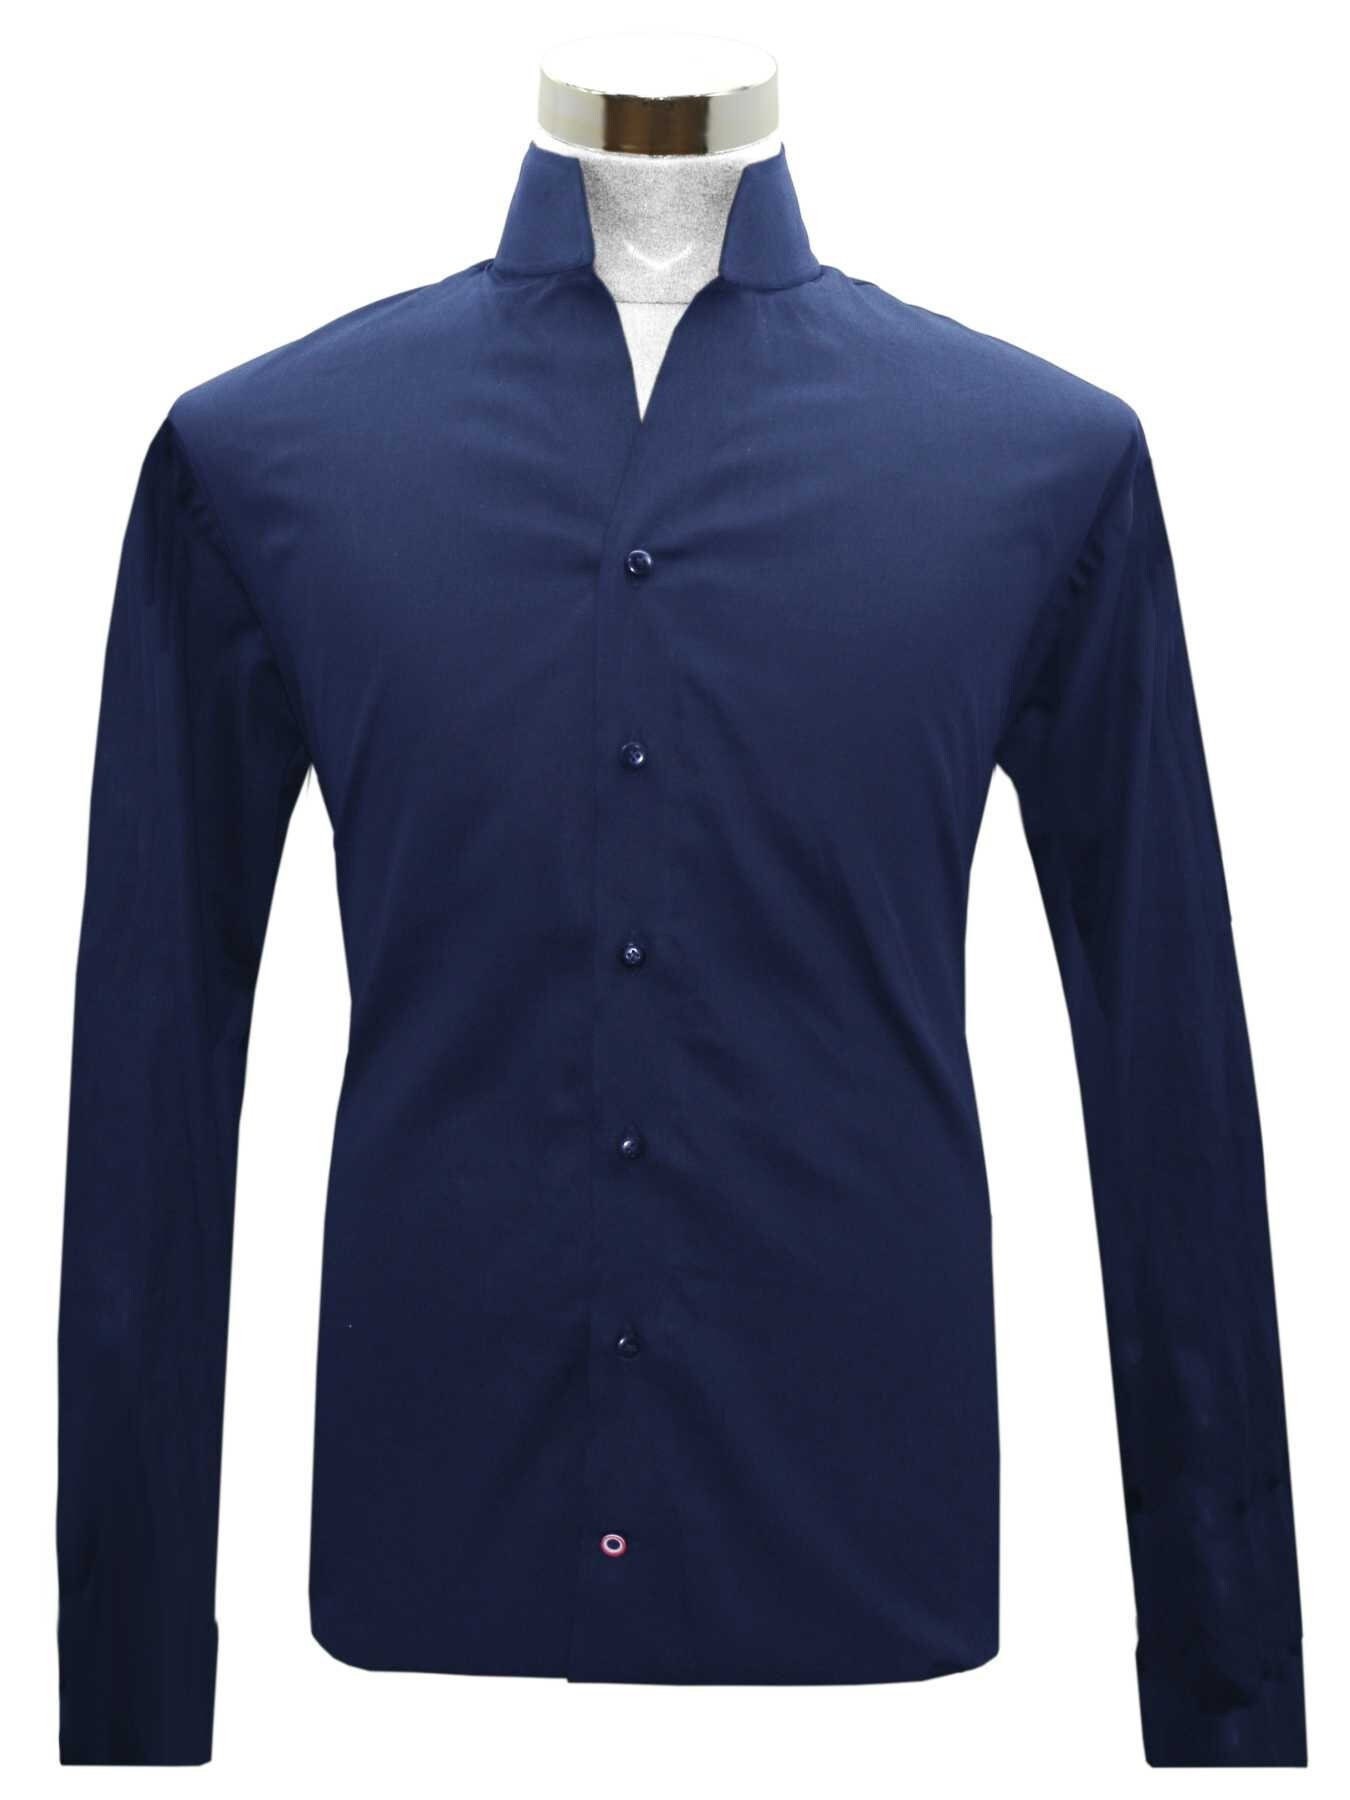 Navy Blue High Chinese Mandarin Collar Long Tall Neck Shirt Men's